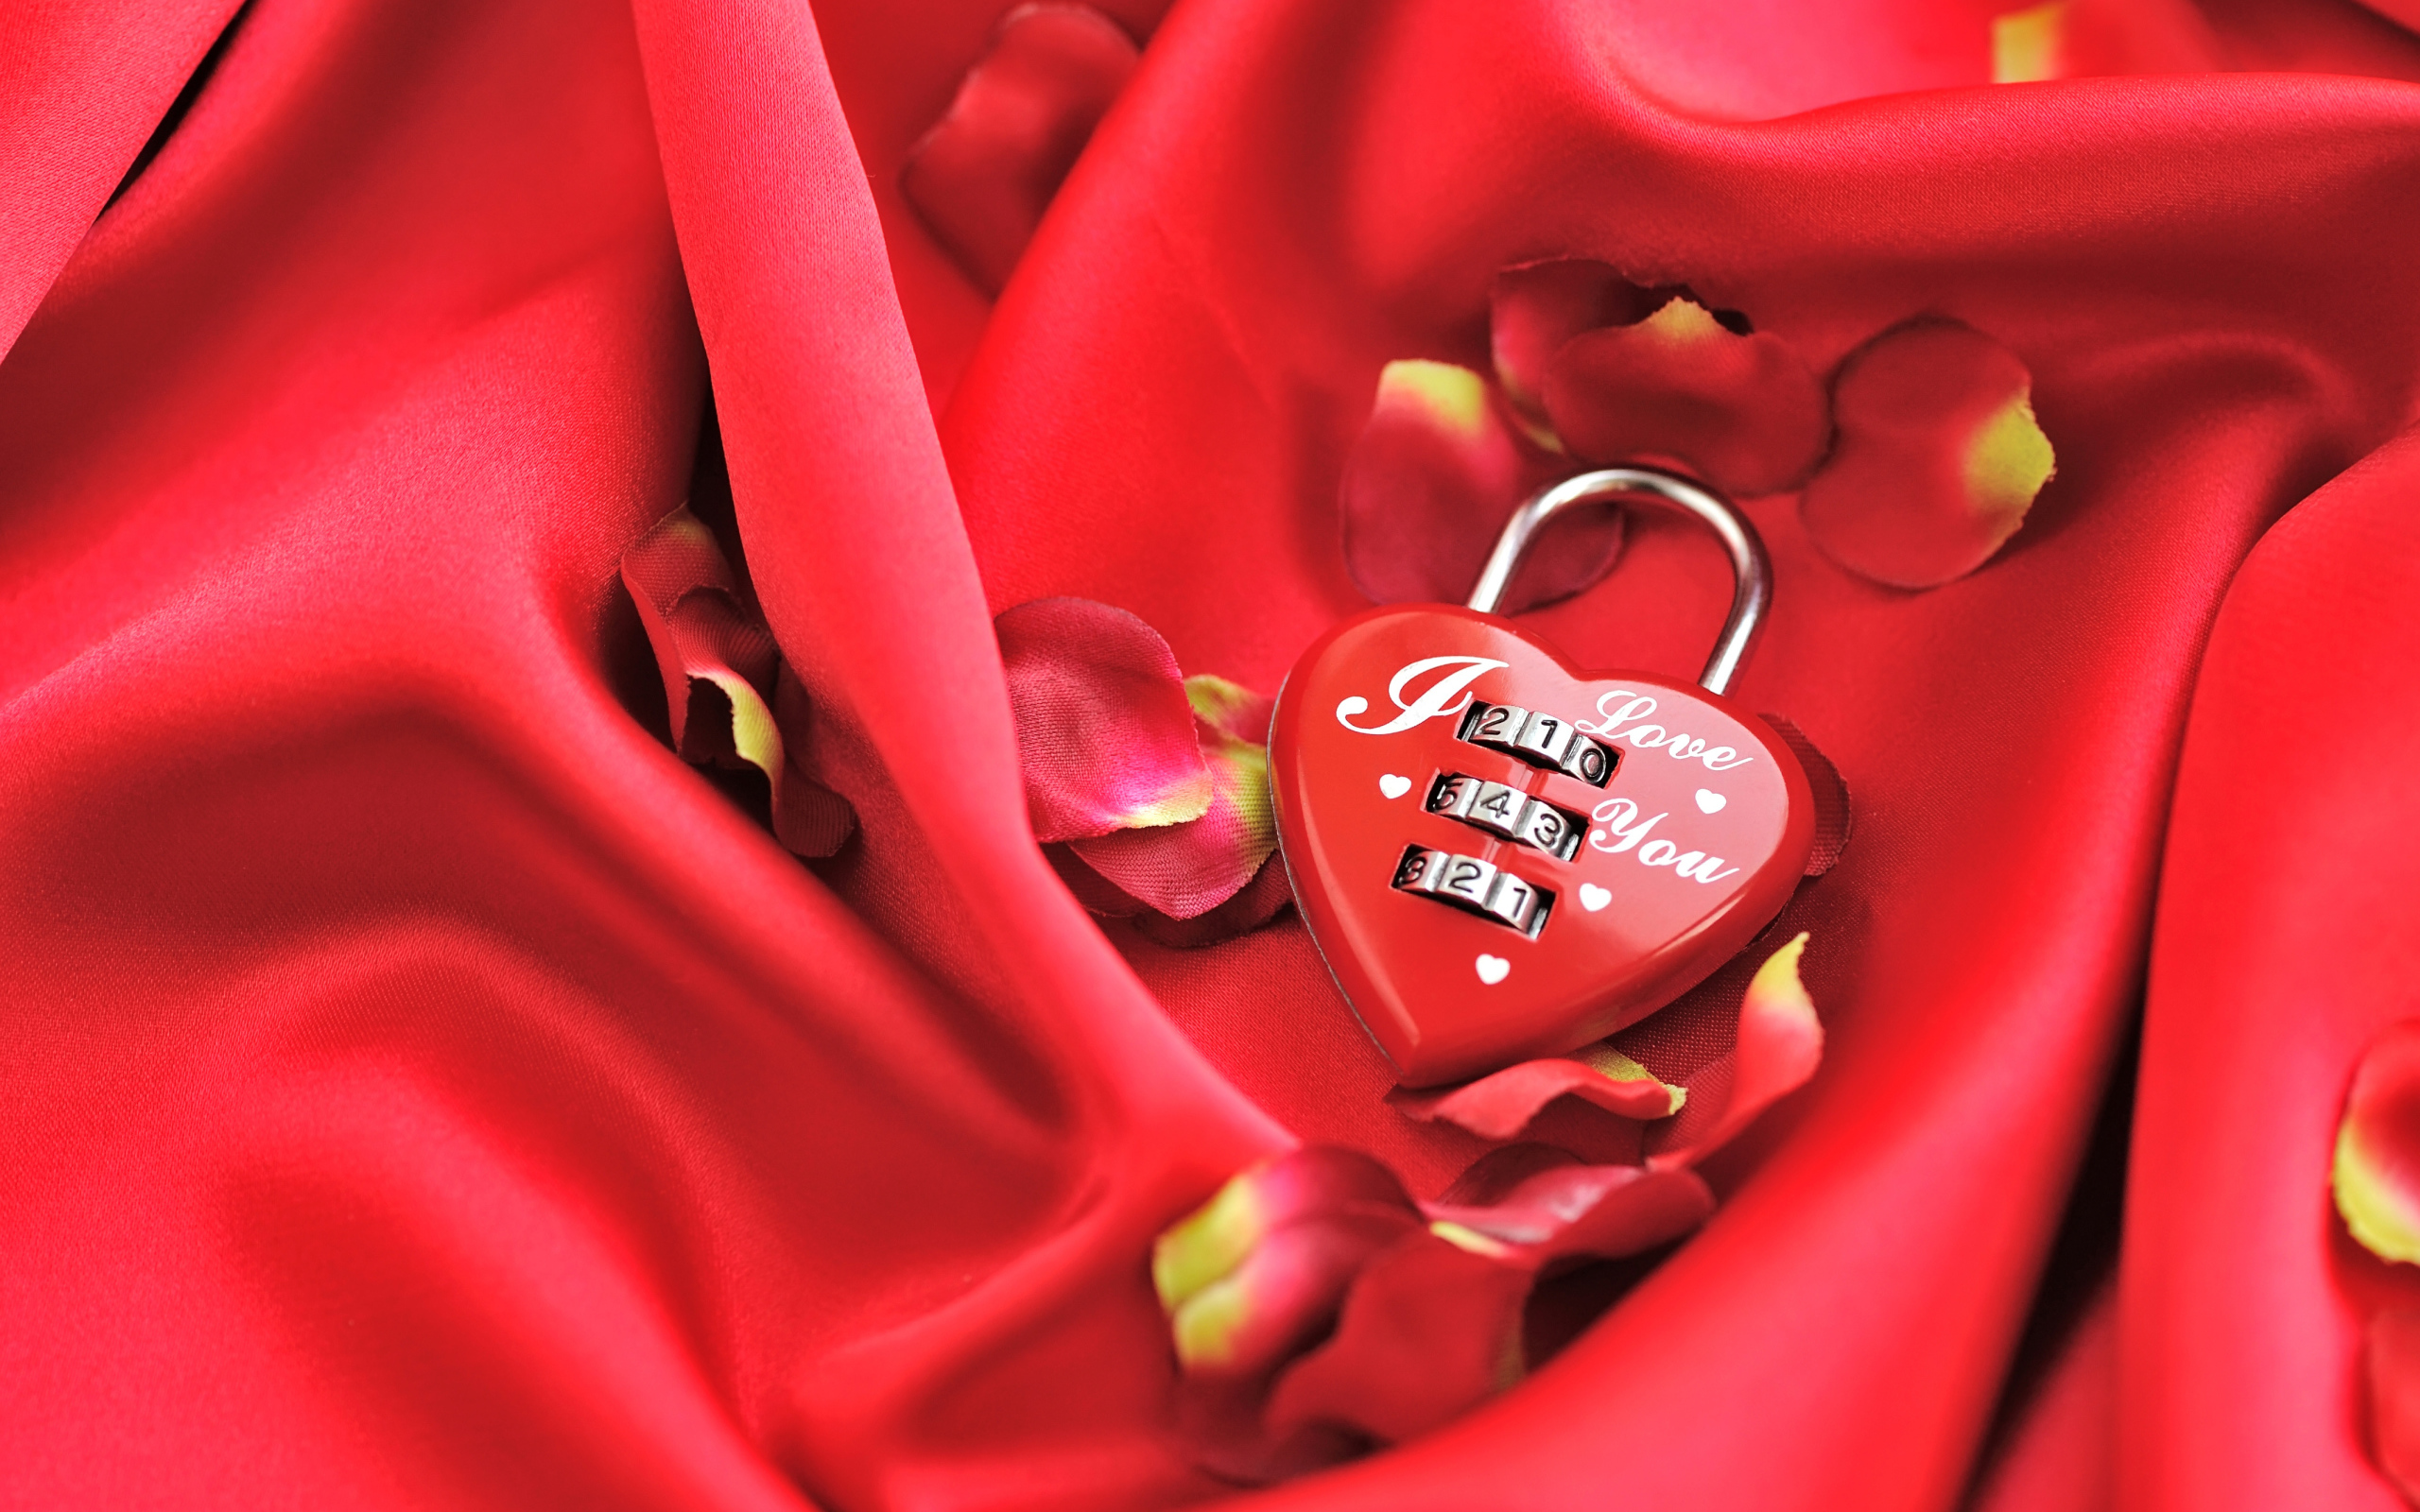 Кодовый замок в форме сердца на красном фоне с лепестками розы